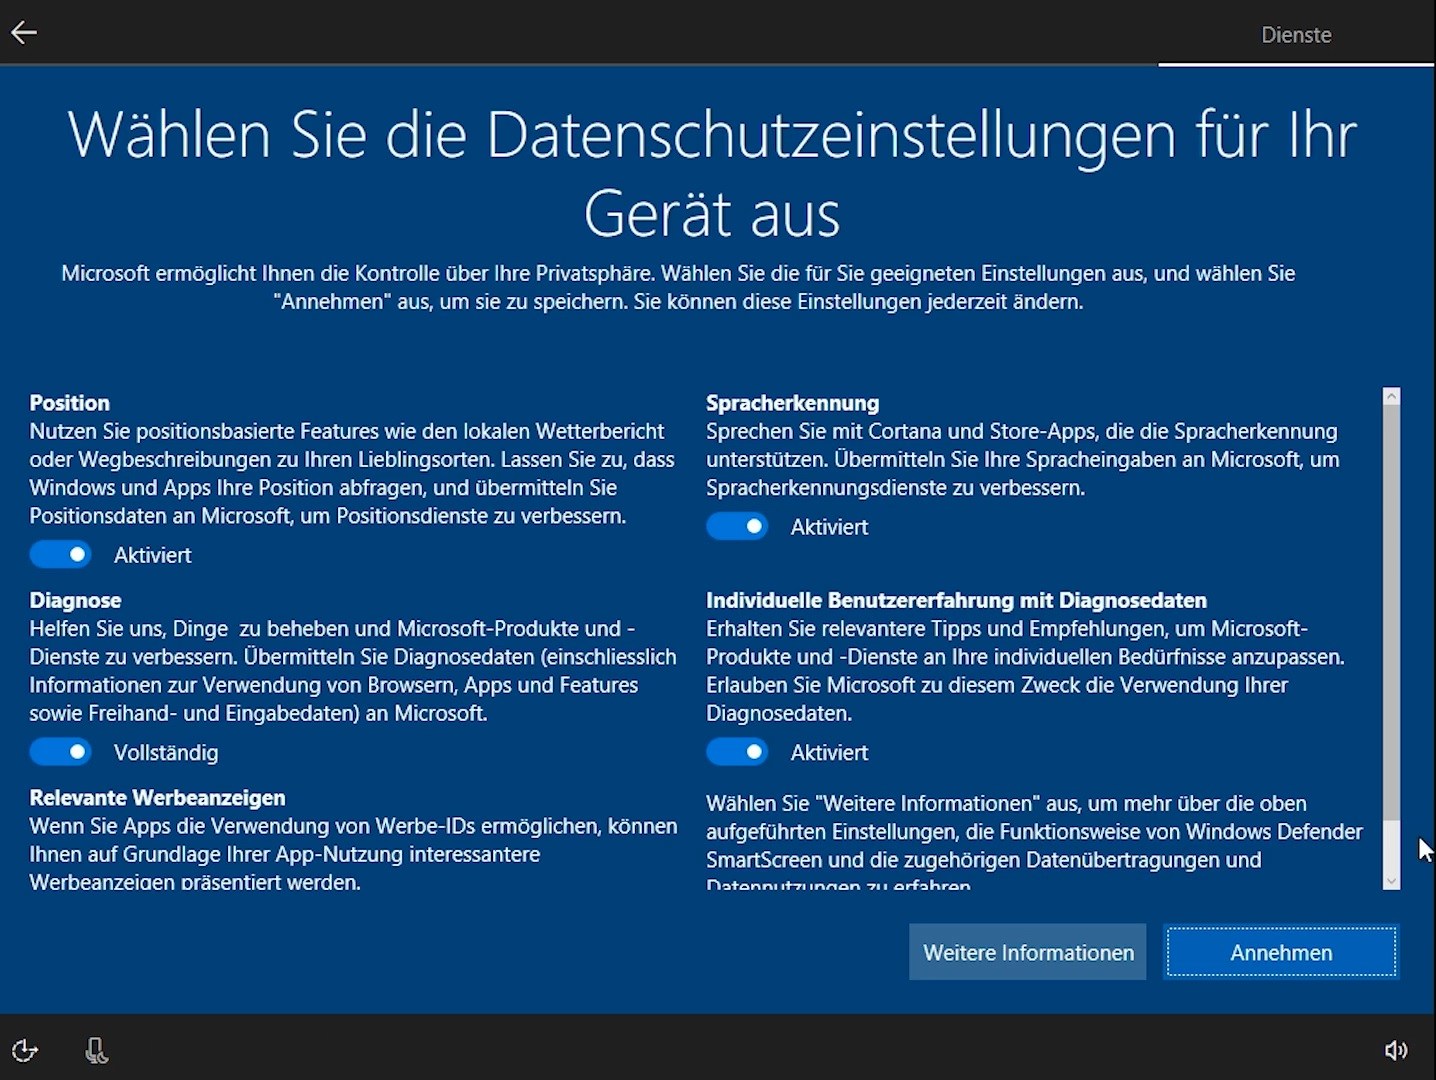 Niederländische Datenschutzbehörde kritisiert Windows 10 - Der Faktencheck